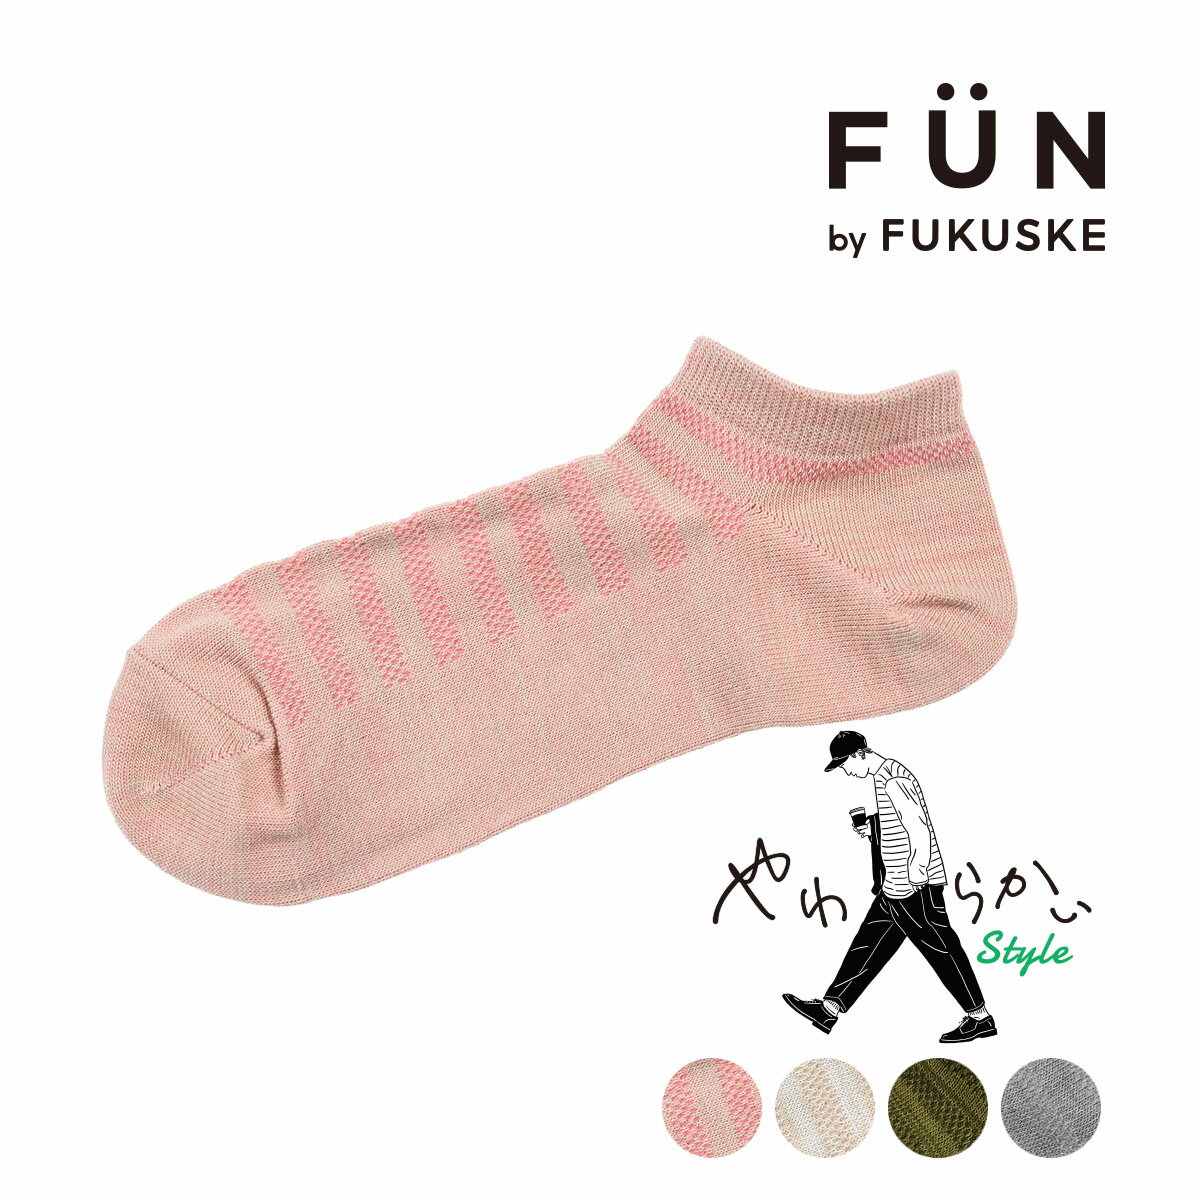 fukuske FUN(フクスケファン) ： やわらかいStyle ボーダー柄 ソックス スニーカー丈 毛玉になりにくい(3FY01W) 紳士 男性 メンズ 靴下 フクスケ fukuske 福助 公式